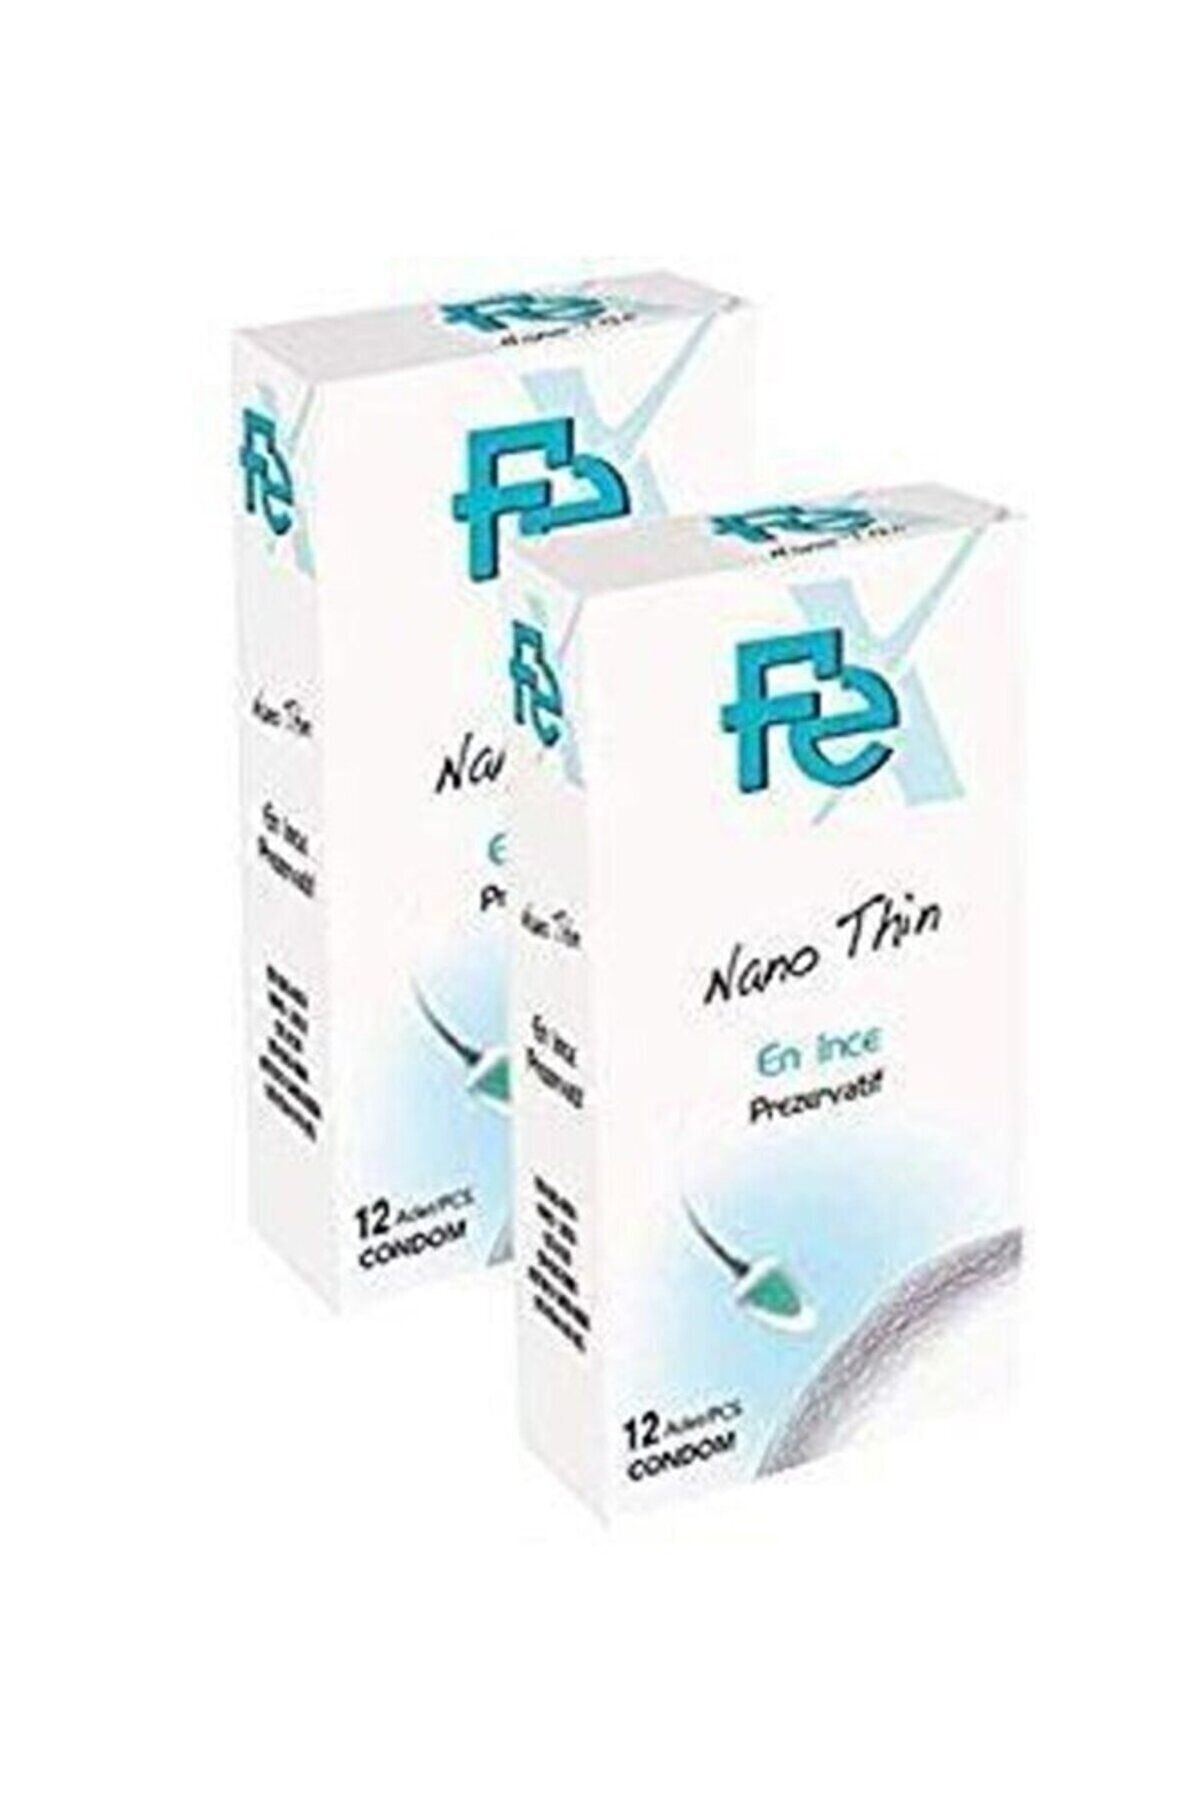 Fe Prezervatif En Ince Nano Thin 2 X 12 Li Paket